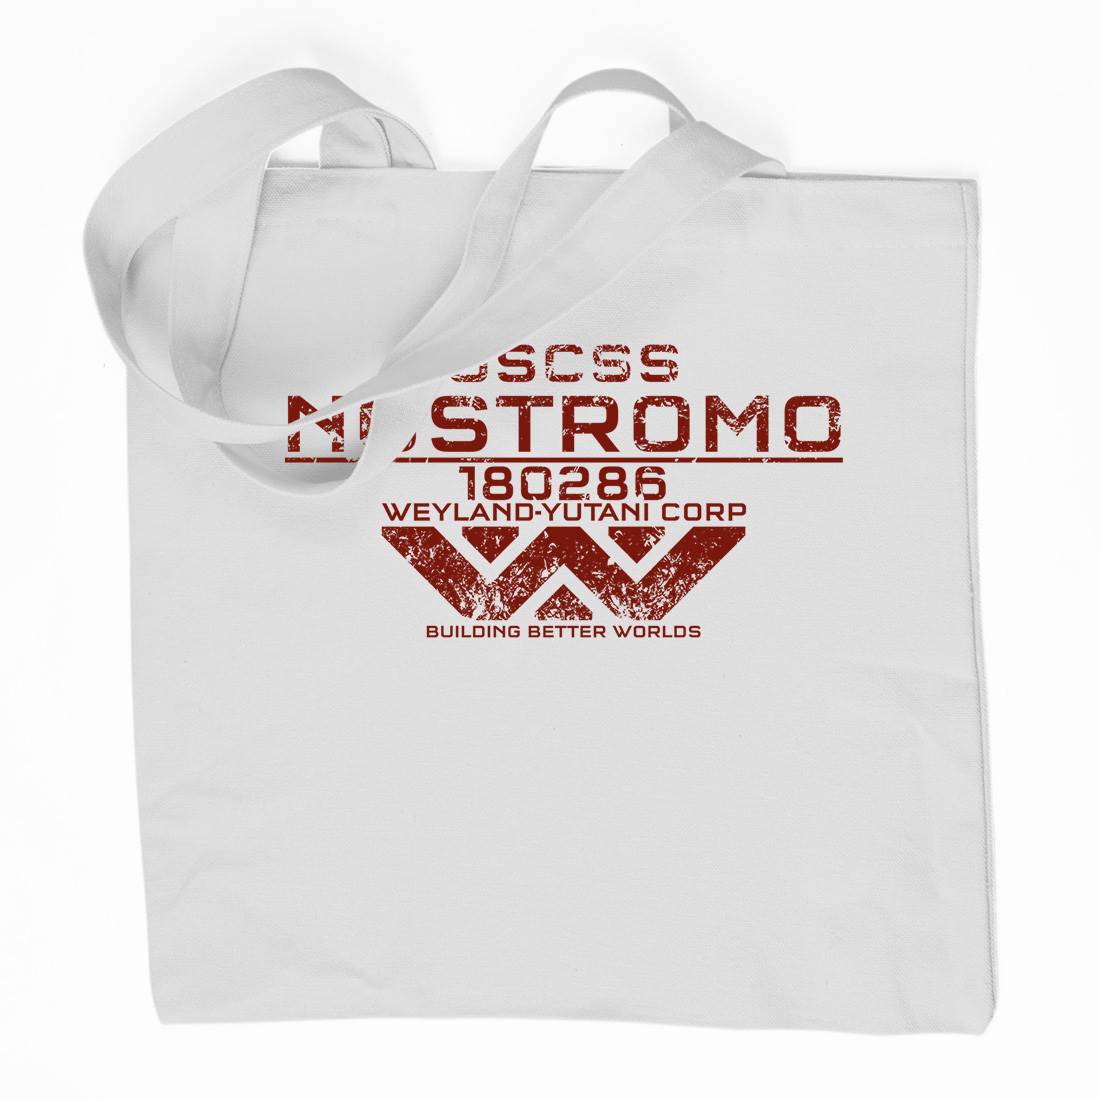 Uscss Nostromo Organic Premium Cotton Tote Bag Space D140